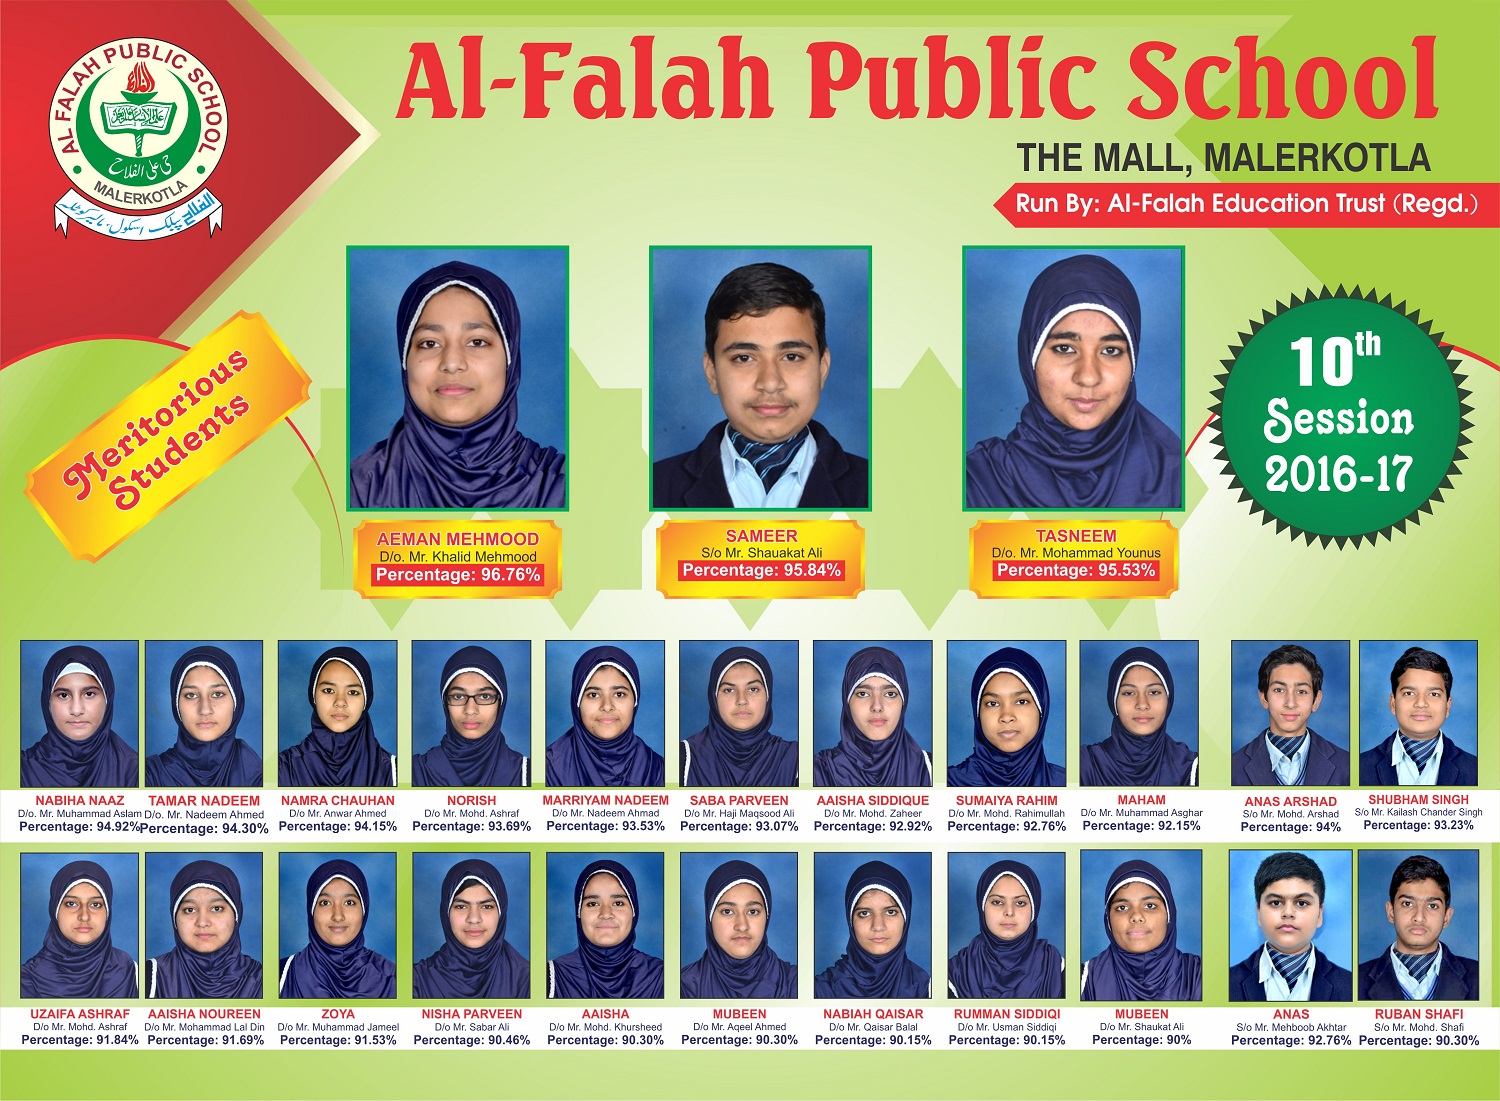 al-falah-academy-calendar-more-good-blogging-photos